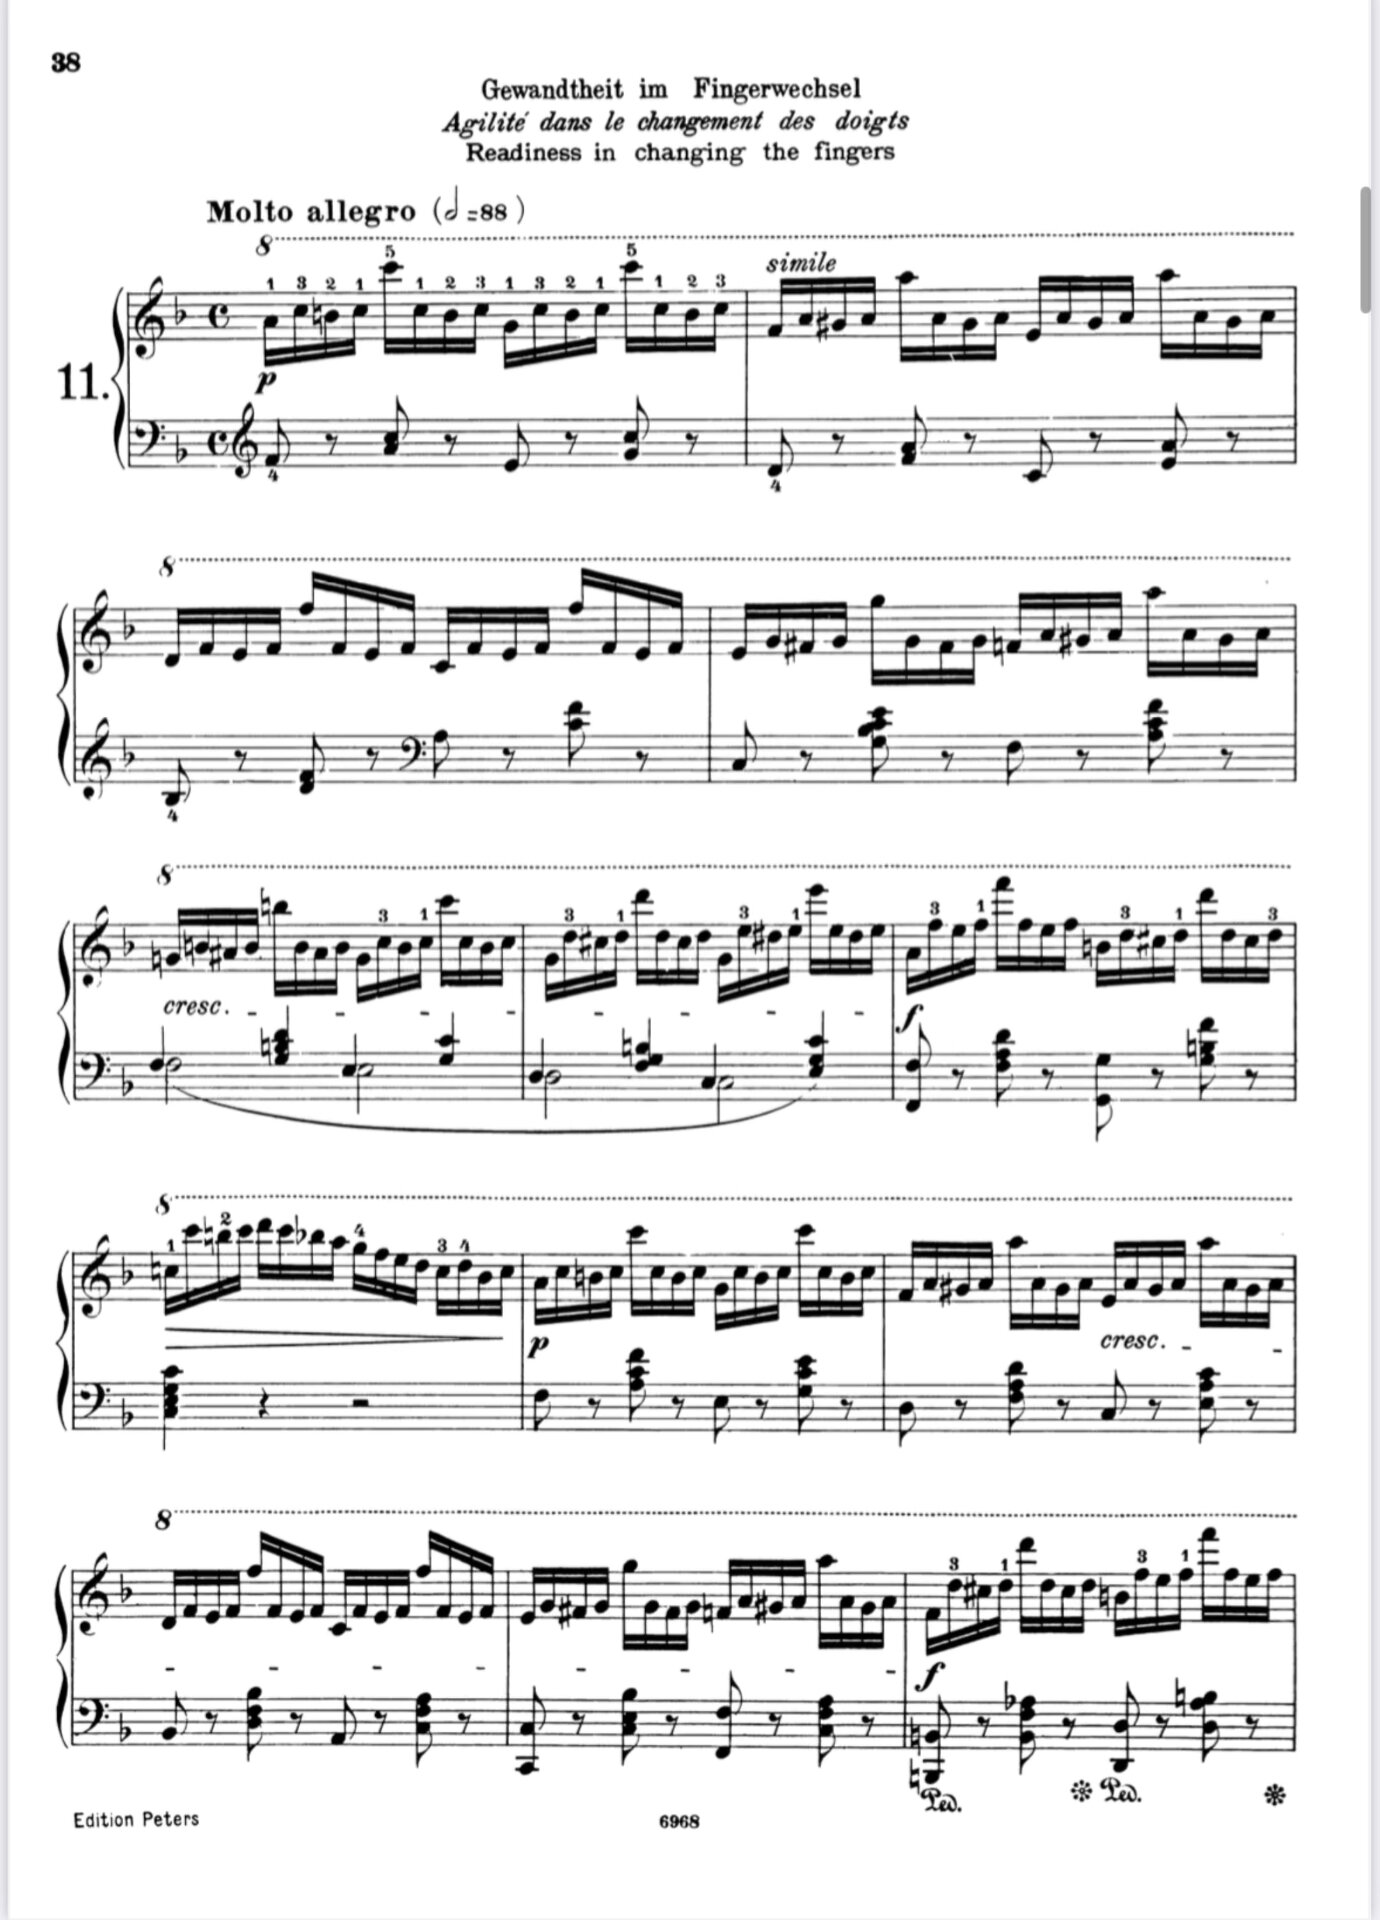 车尔尼821第一条钢琴谱图片